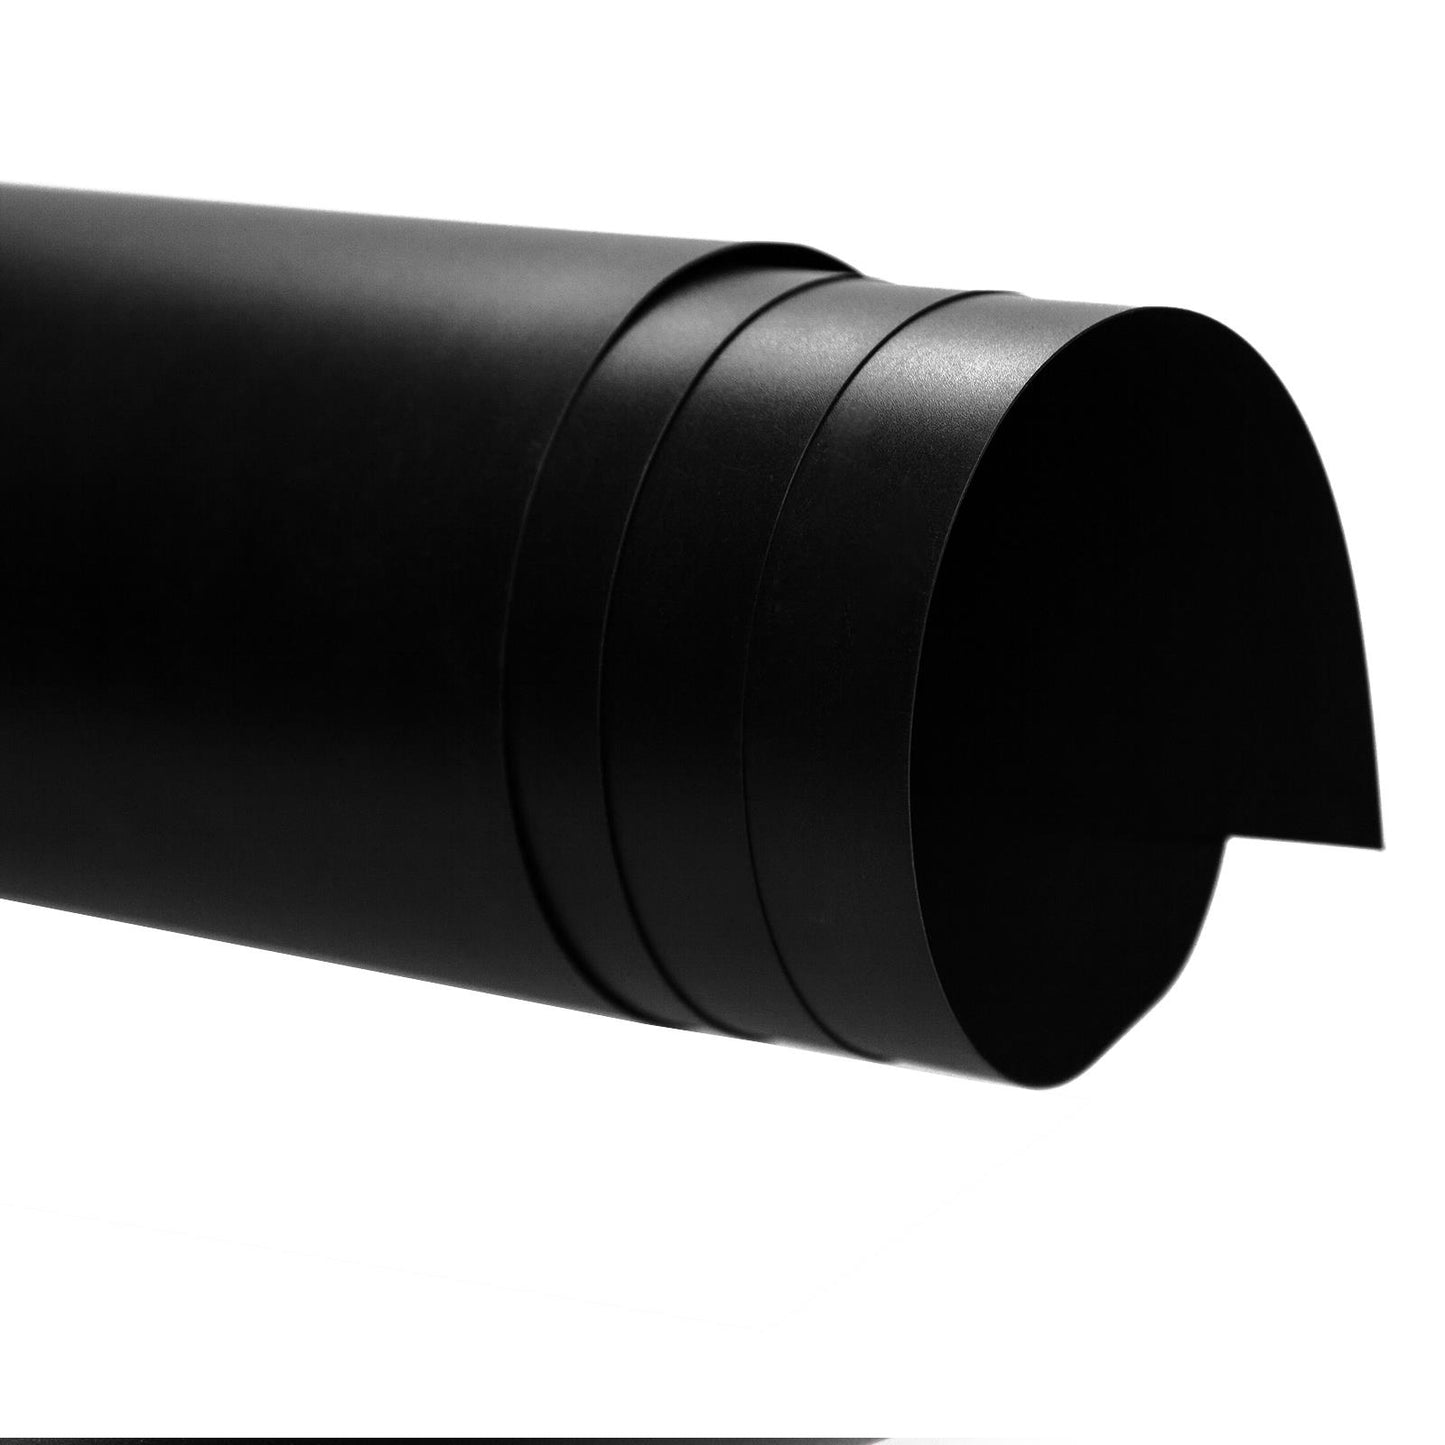 Black + White PVC Backdrops, 0.6m x 1.3m